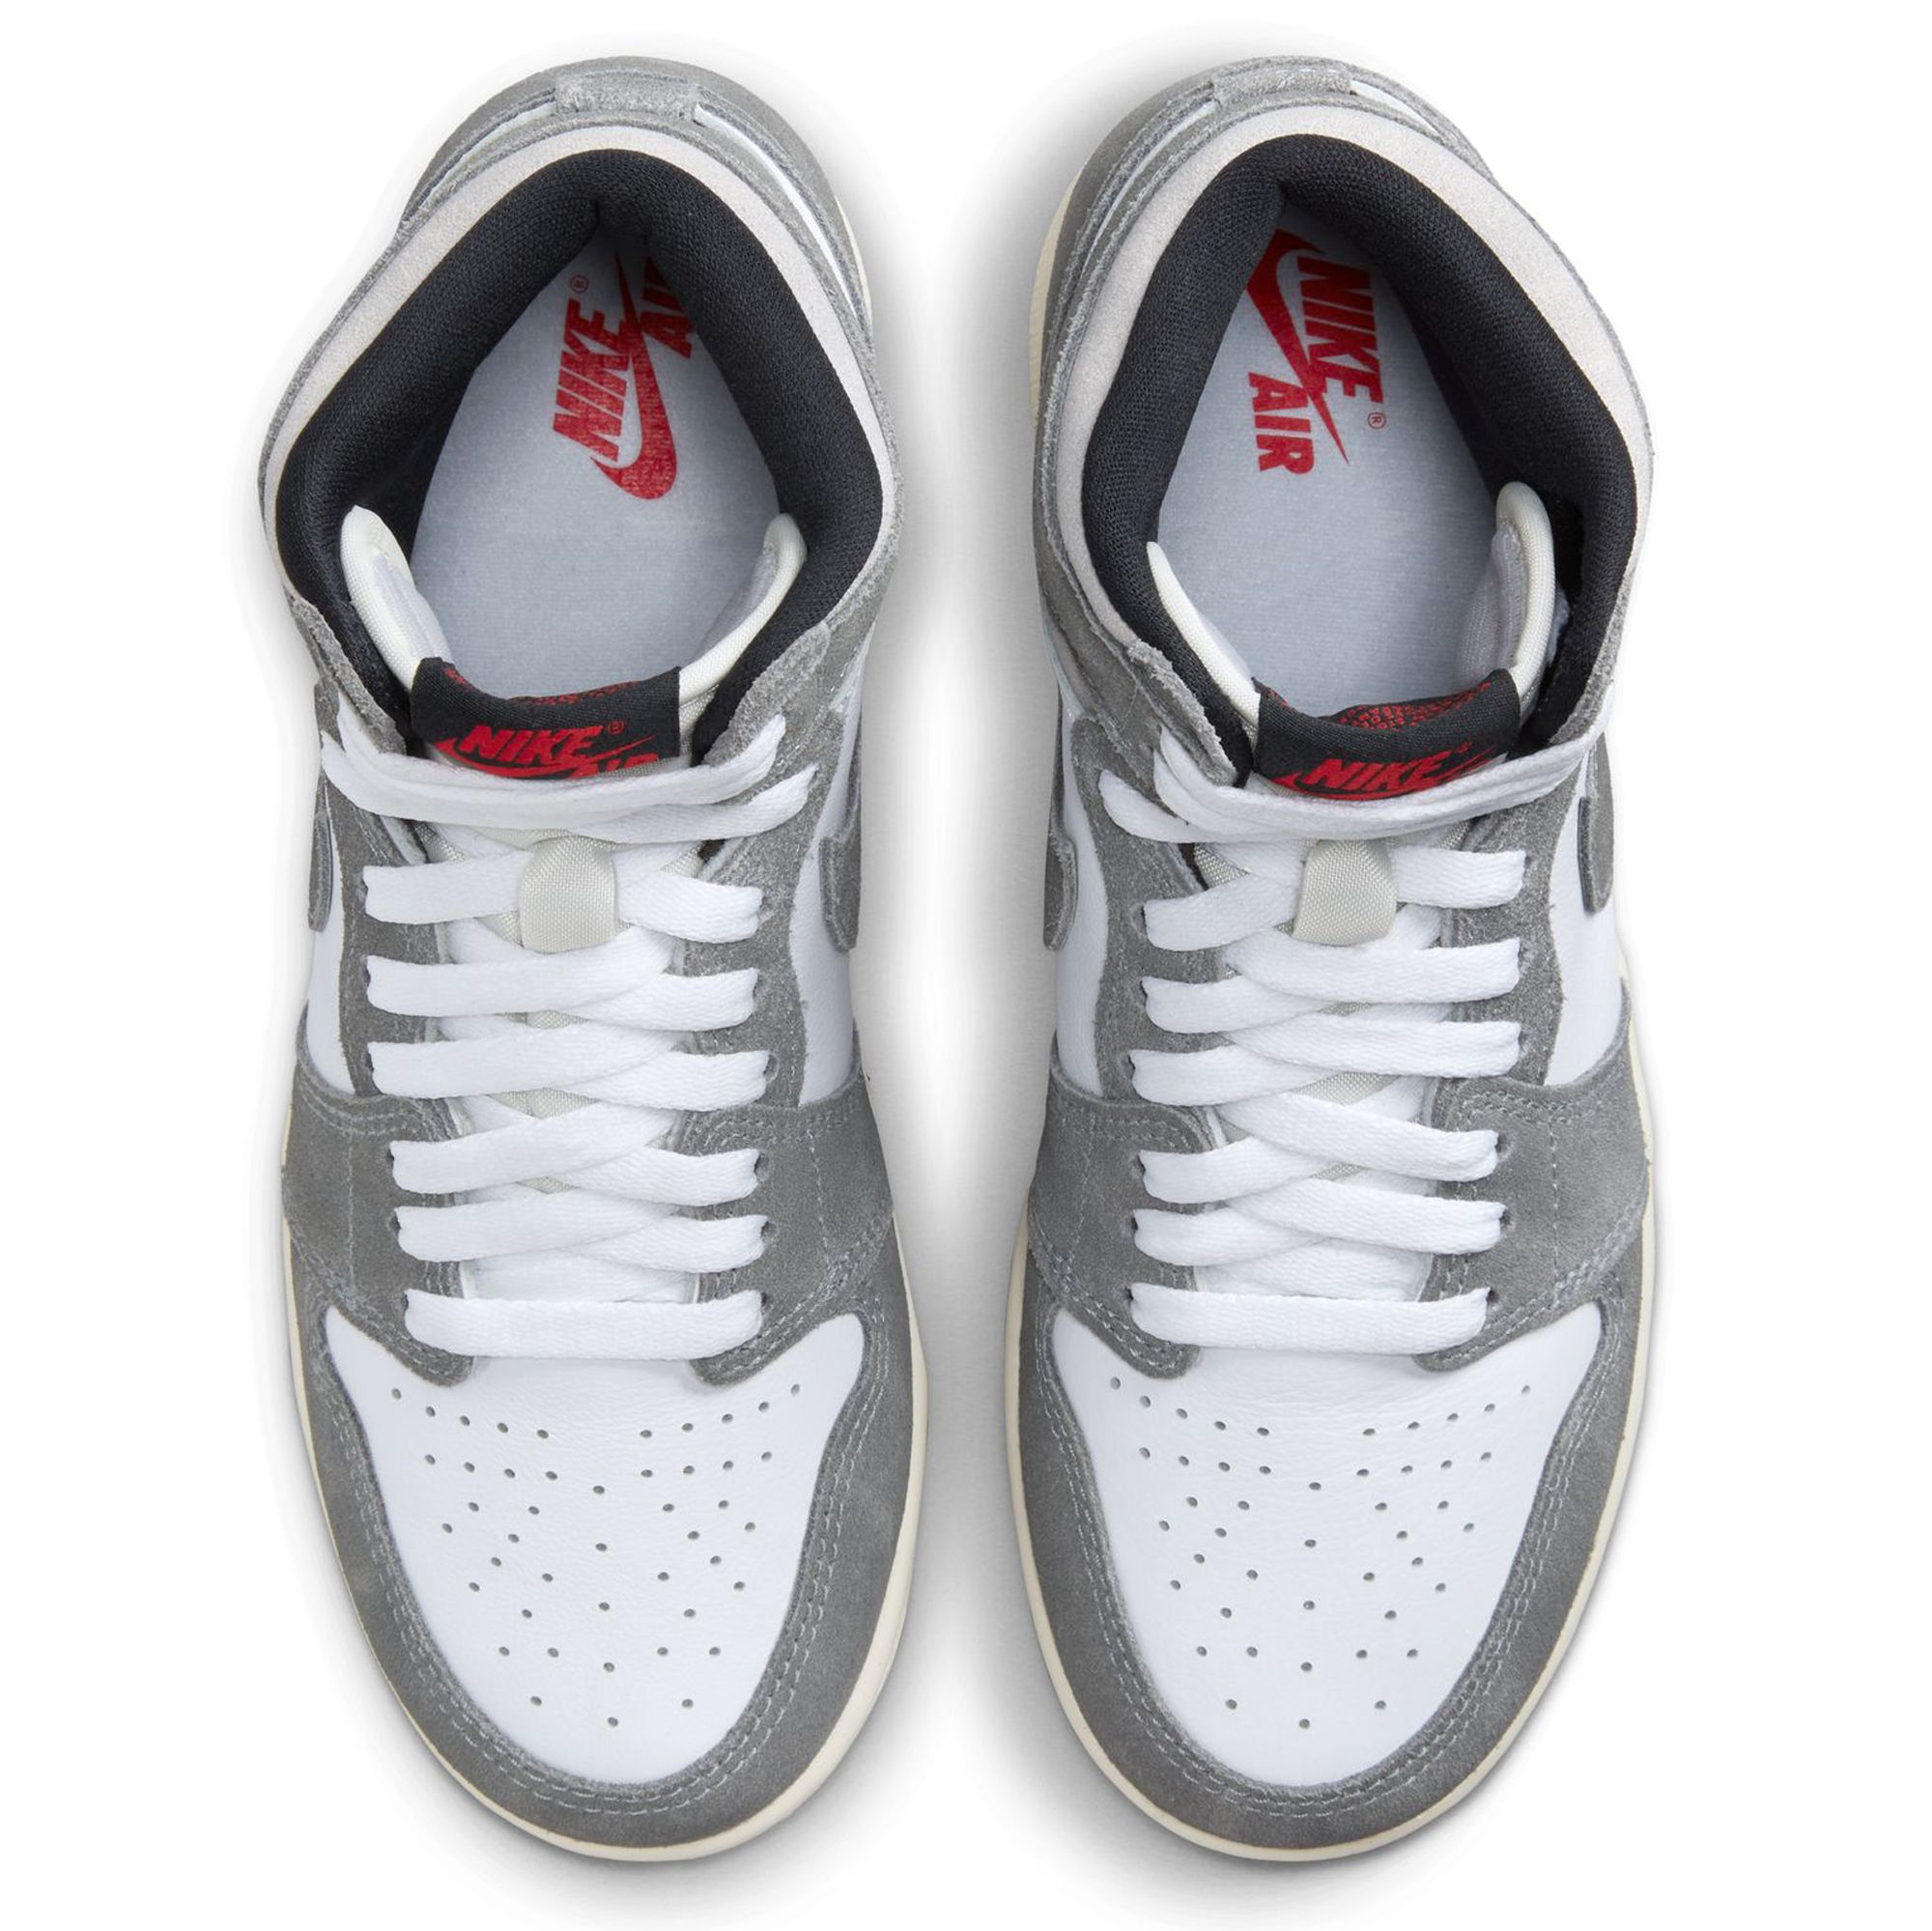 Nike Air Jordan 1 Retro High Light Smoke Grey | Size 9.5, Sneaker in White/Grey/Red